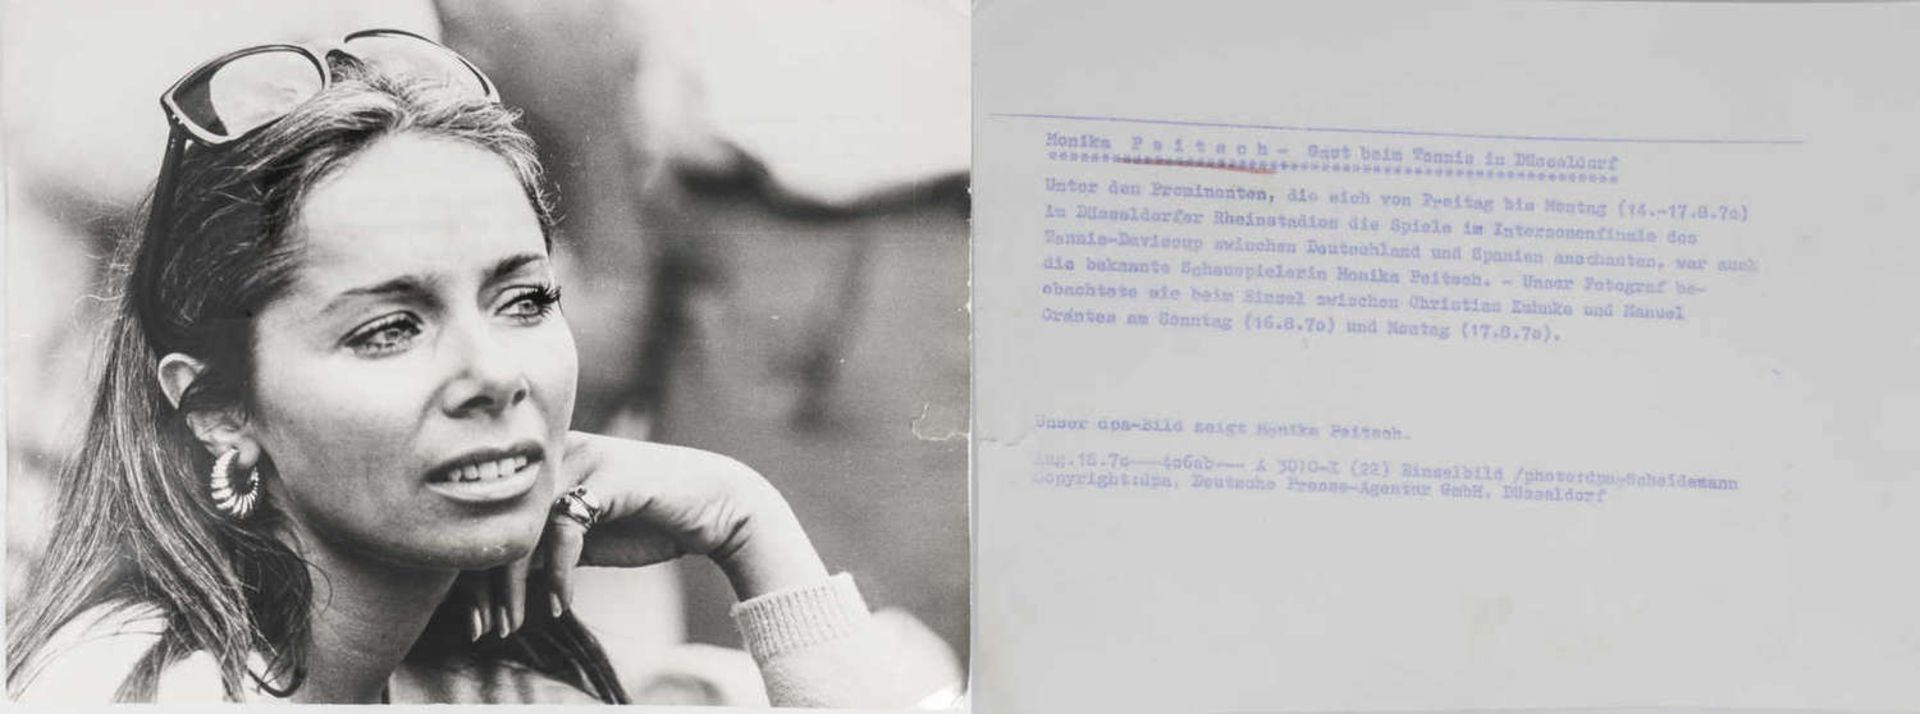 Lot Pessefotographien der DPA, dabei: 1. Johannes Hesters mit Gattin, 2. Barbara Valentin, 3. - Bild 12 aus 14